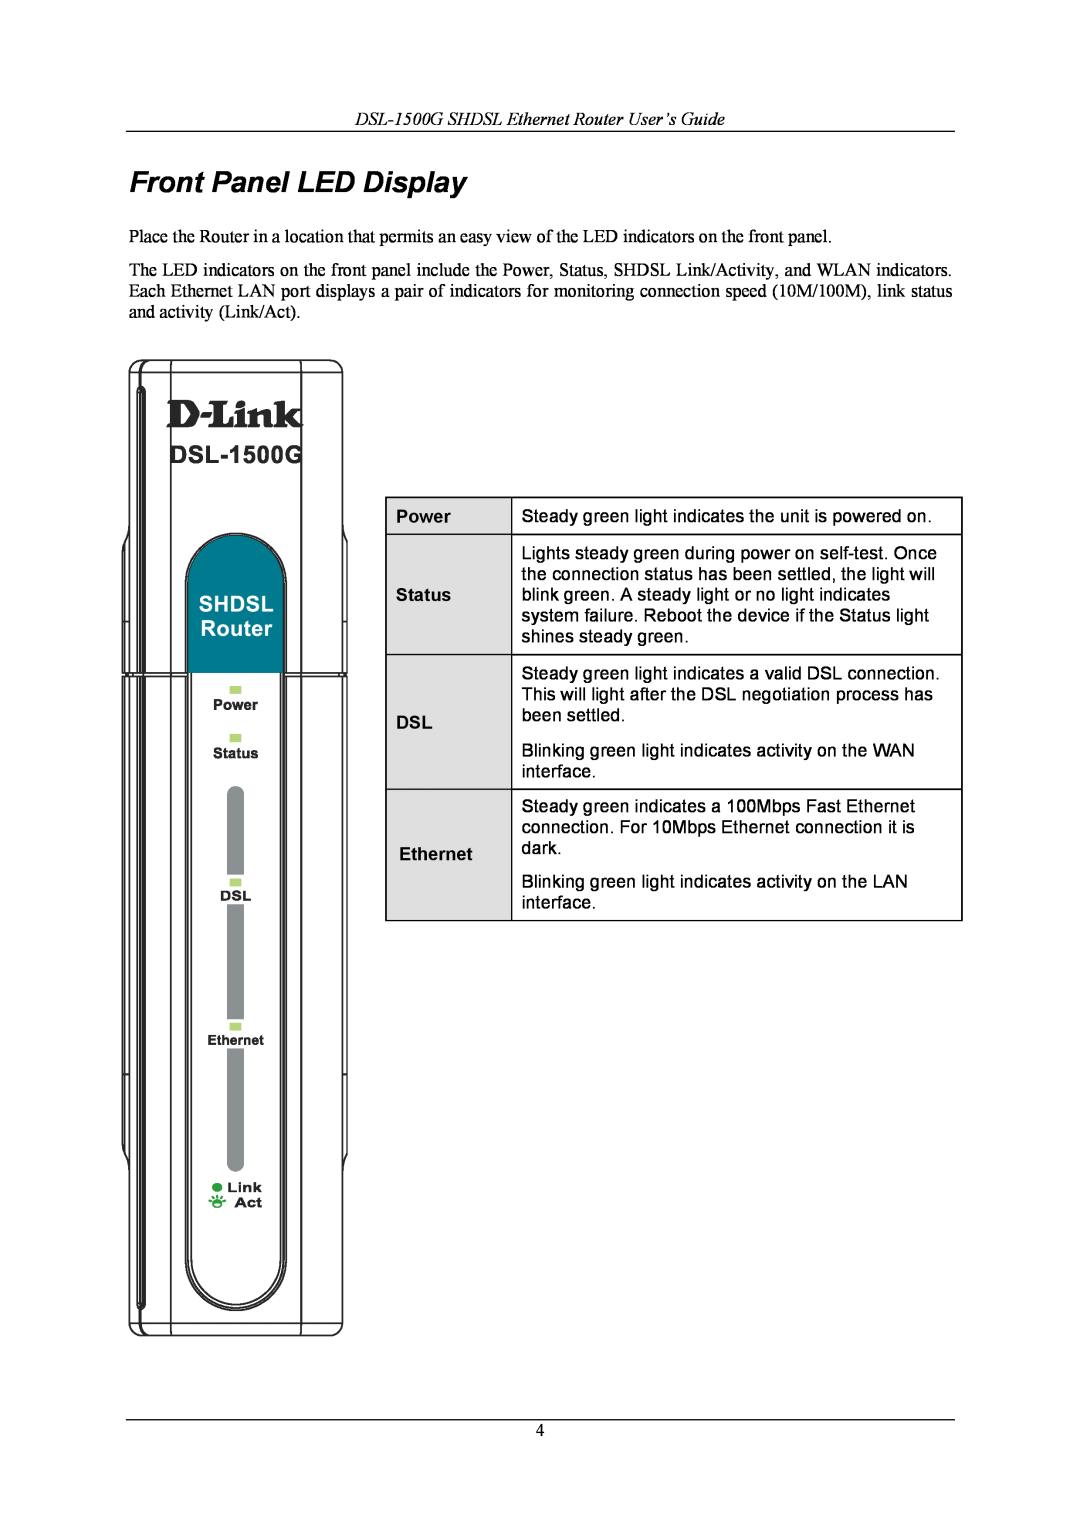 D-Link manual Front Panel LED Display, DSL-1500G SHDSL Ethernet Router User’s Guide, Power, Status 